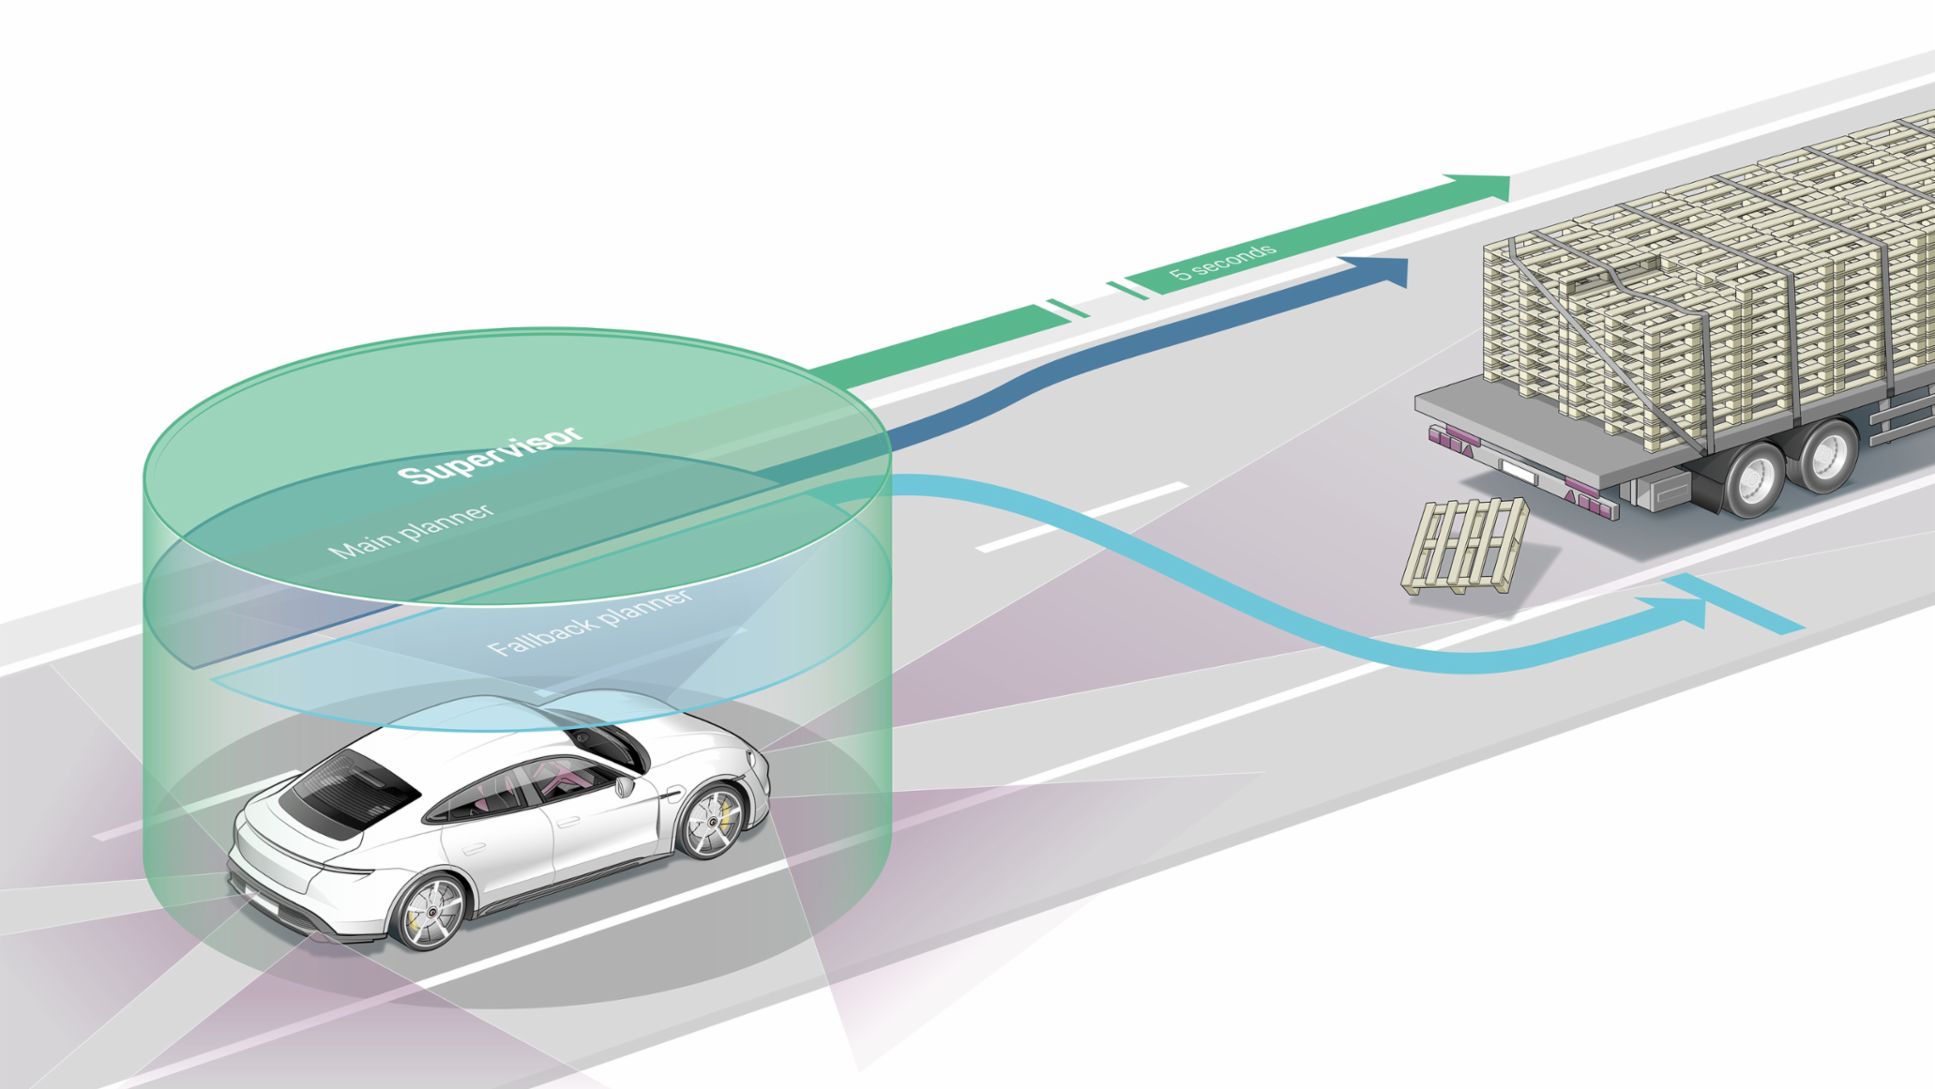 Sistemas principal (azul oscuro) y de contingencia (azul claro) para la planificación de rutas, controlados por el sistema de supervisión (verde), 2022, Porsche AG